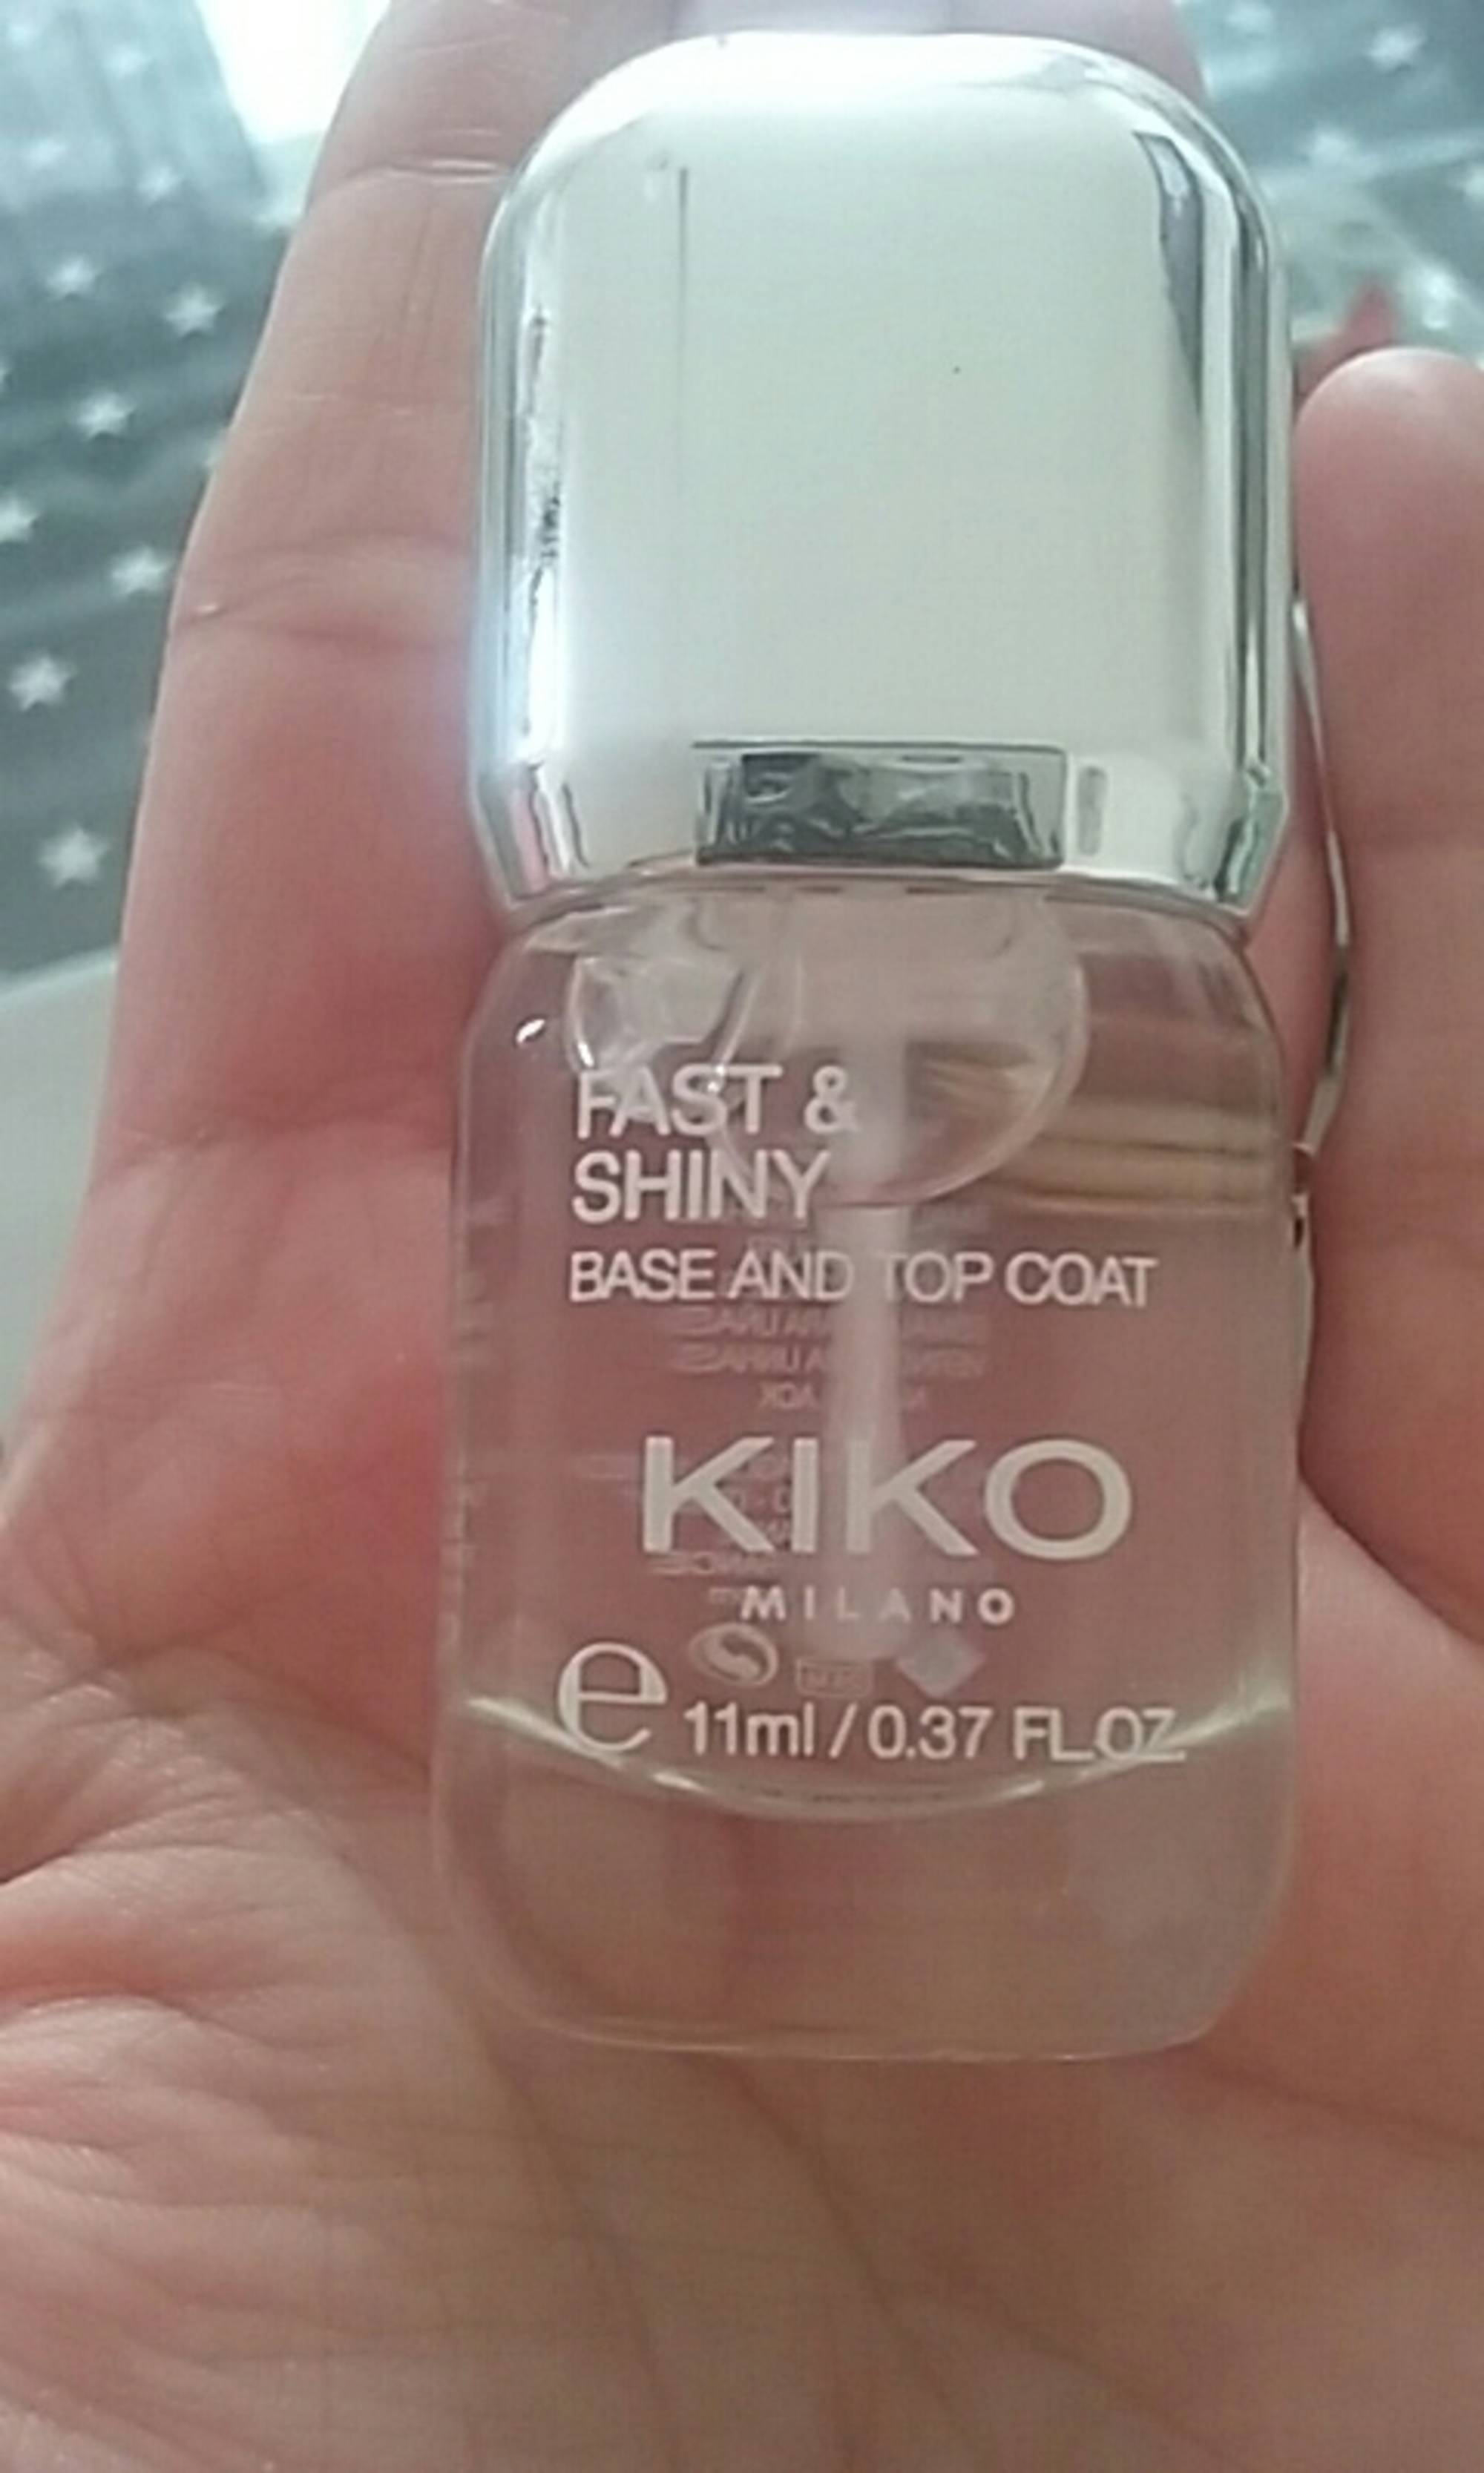 KIKO - Fast & shiny - Base and top coat